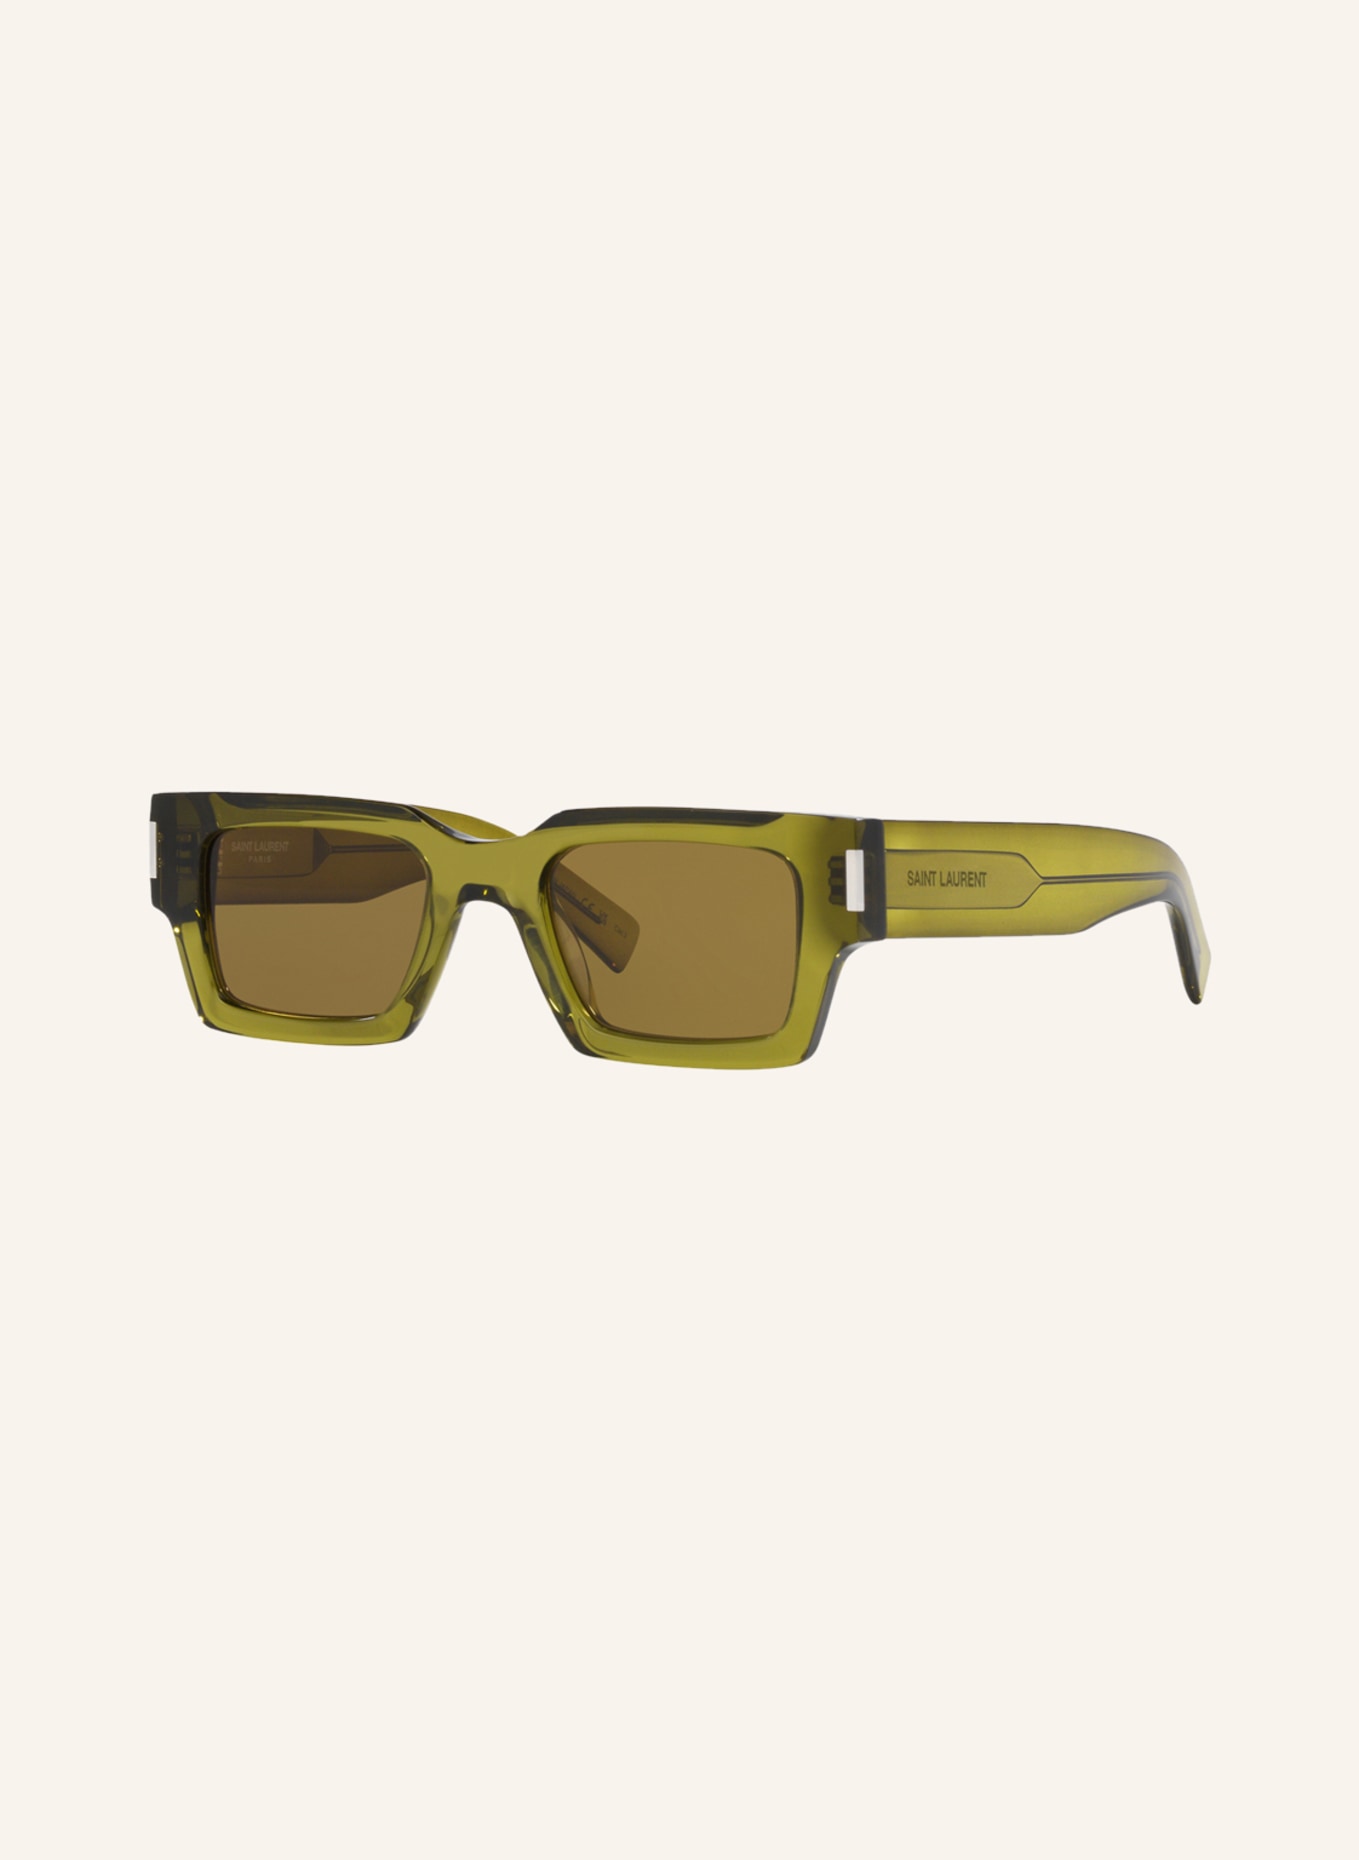 SAINT LAURENT Sunglasses SL572, Color: 2500D1 - OLIVE/ BROWN (Image 1)